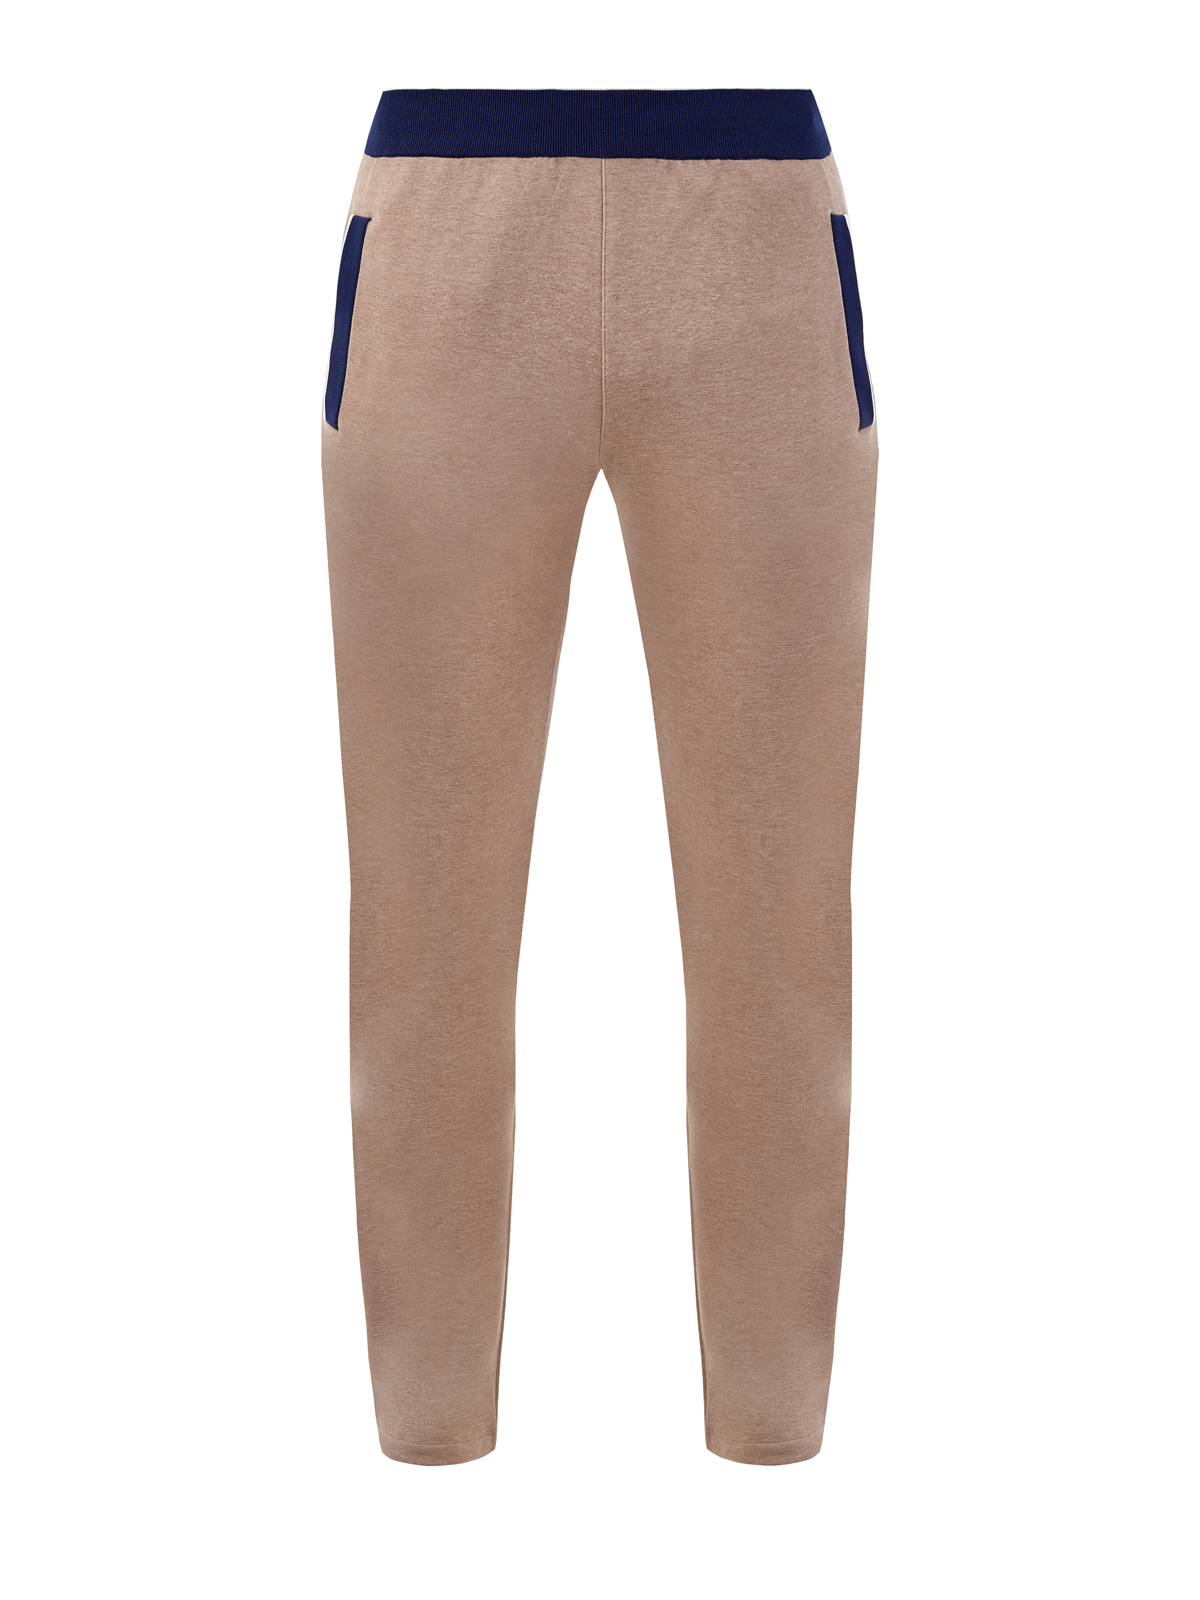 Спортивные брюки из хлопка с контрастной отделкой BERTOLO CASHMERE. Цвет: бежевый